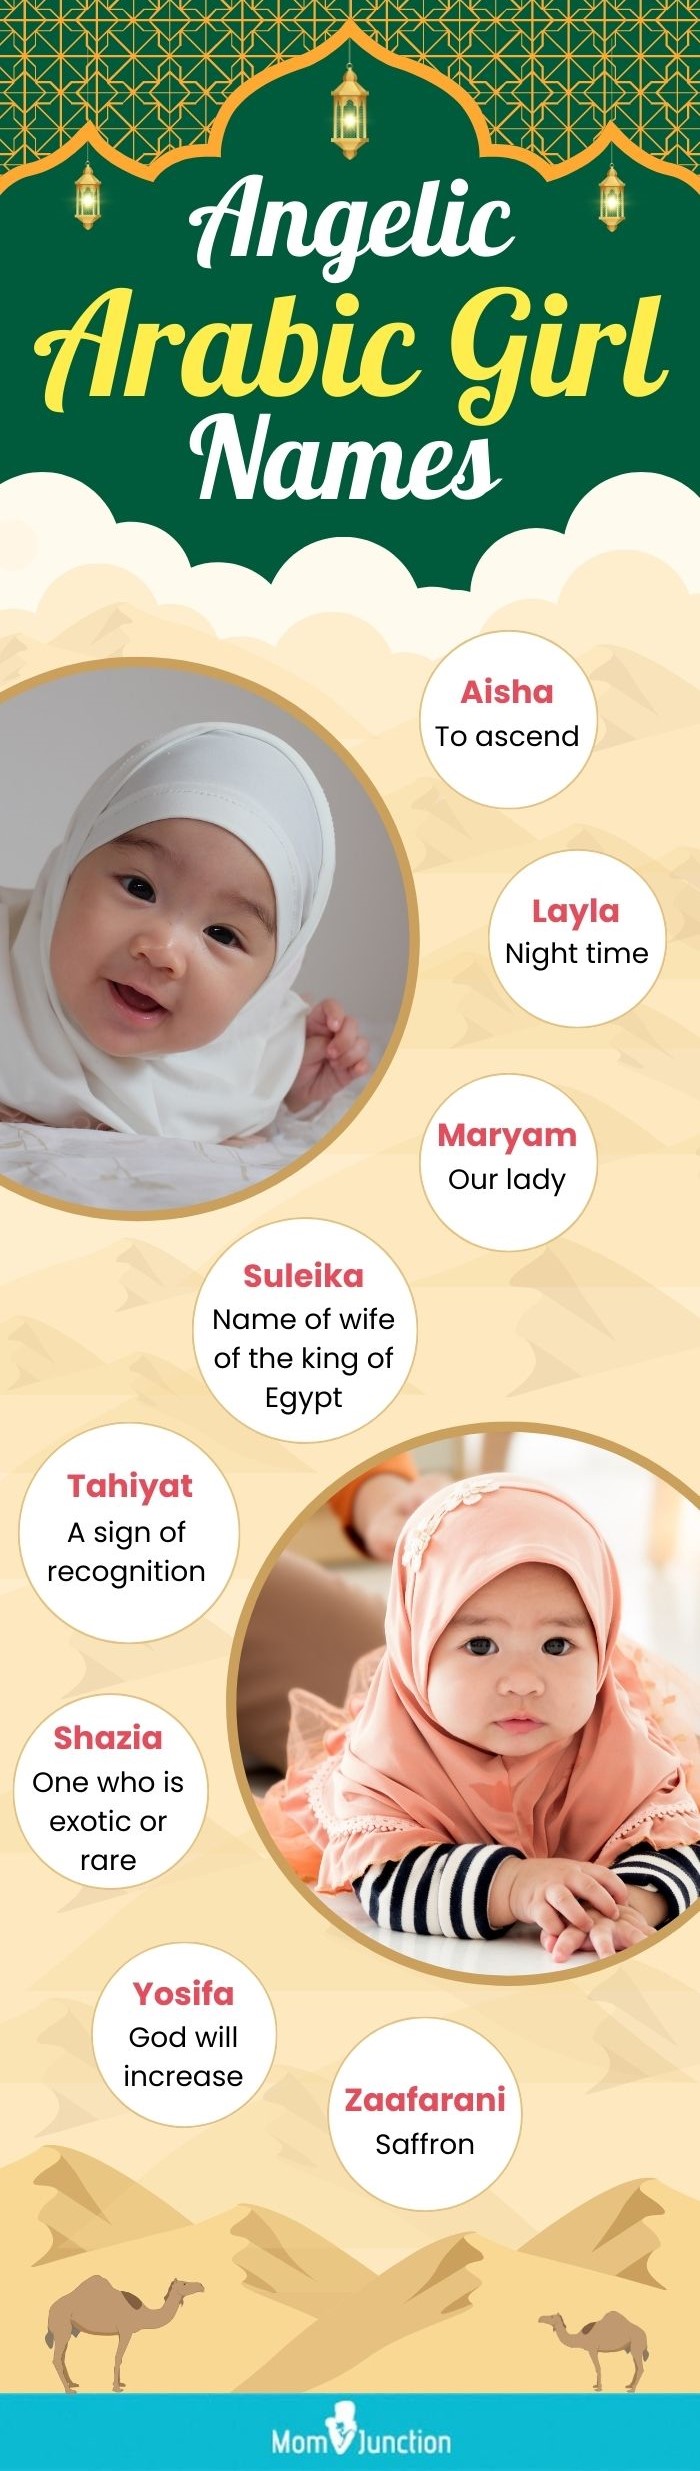 Angelic Arabic Girl Names 